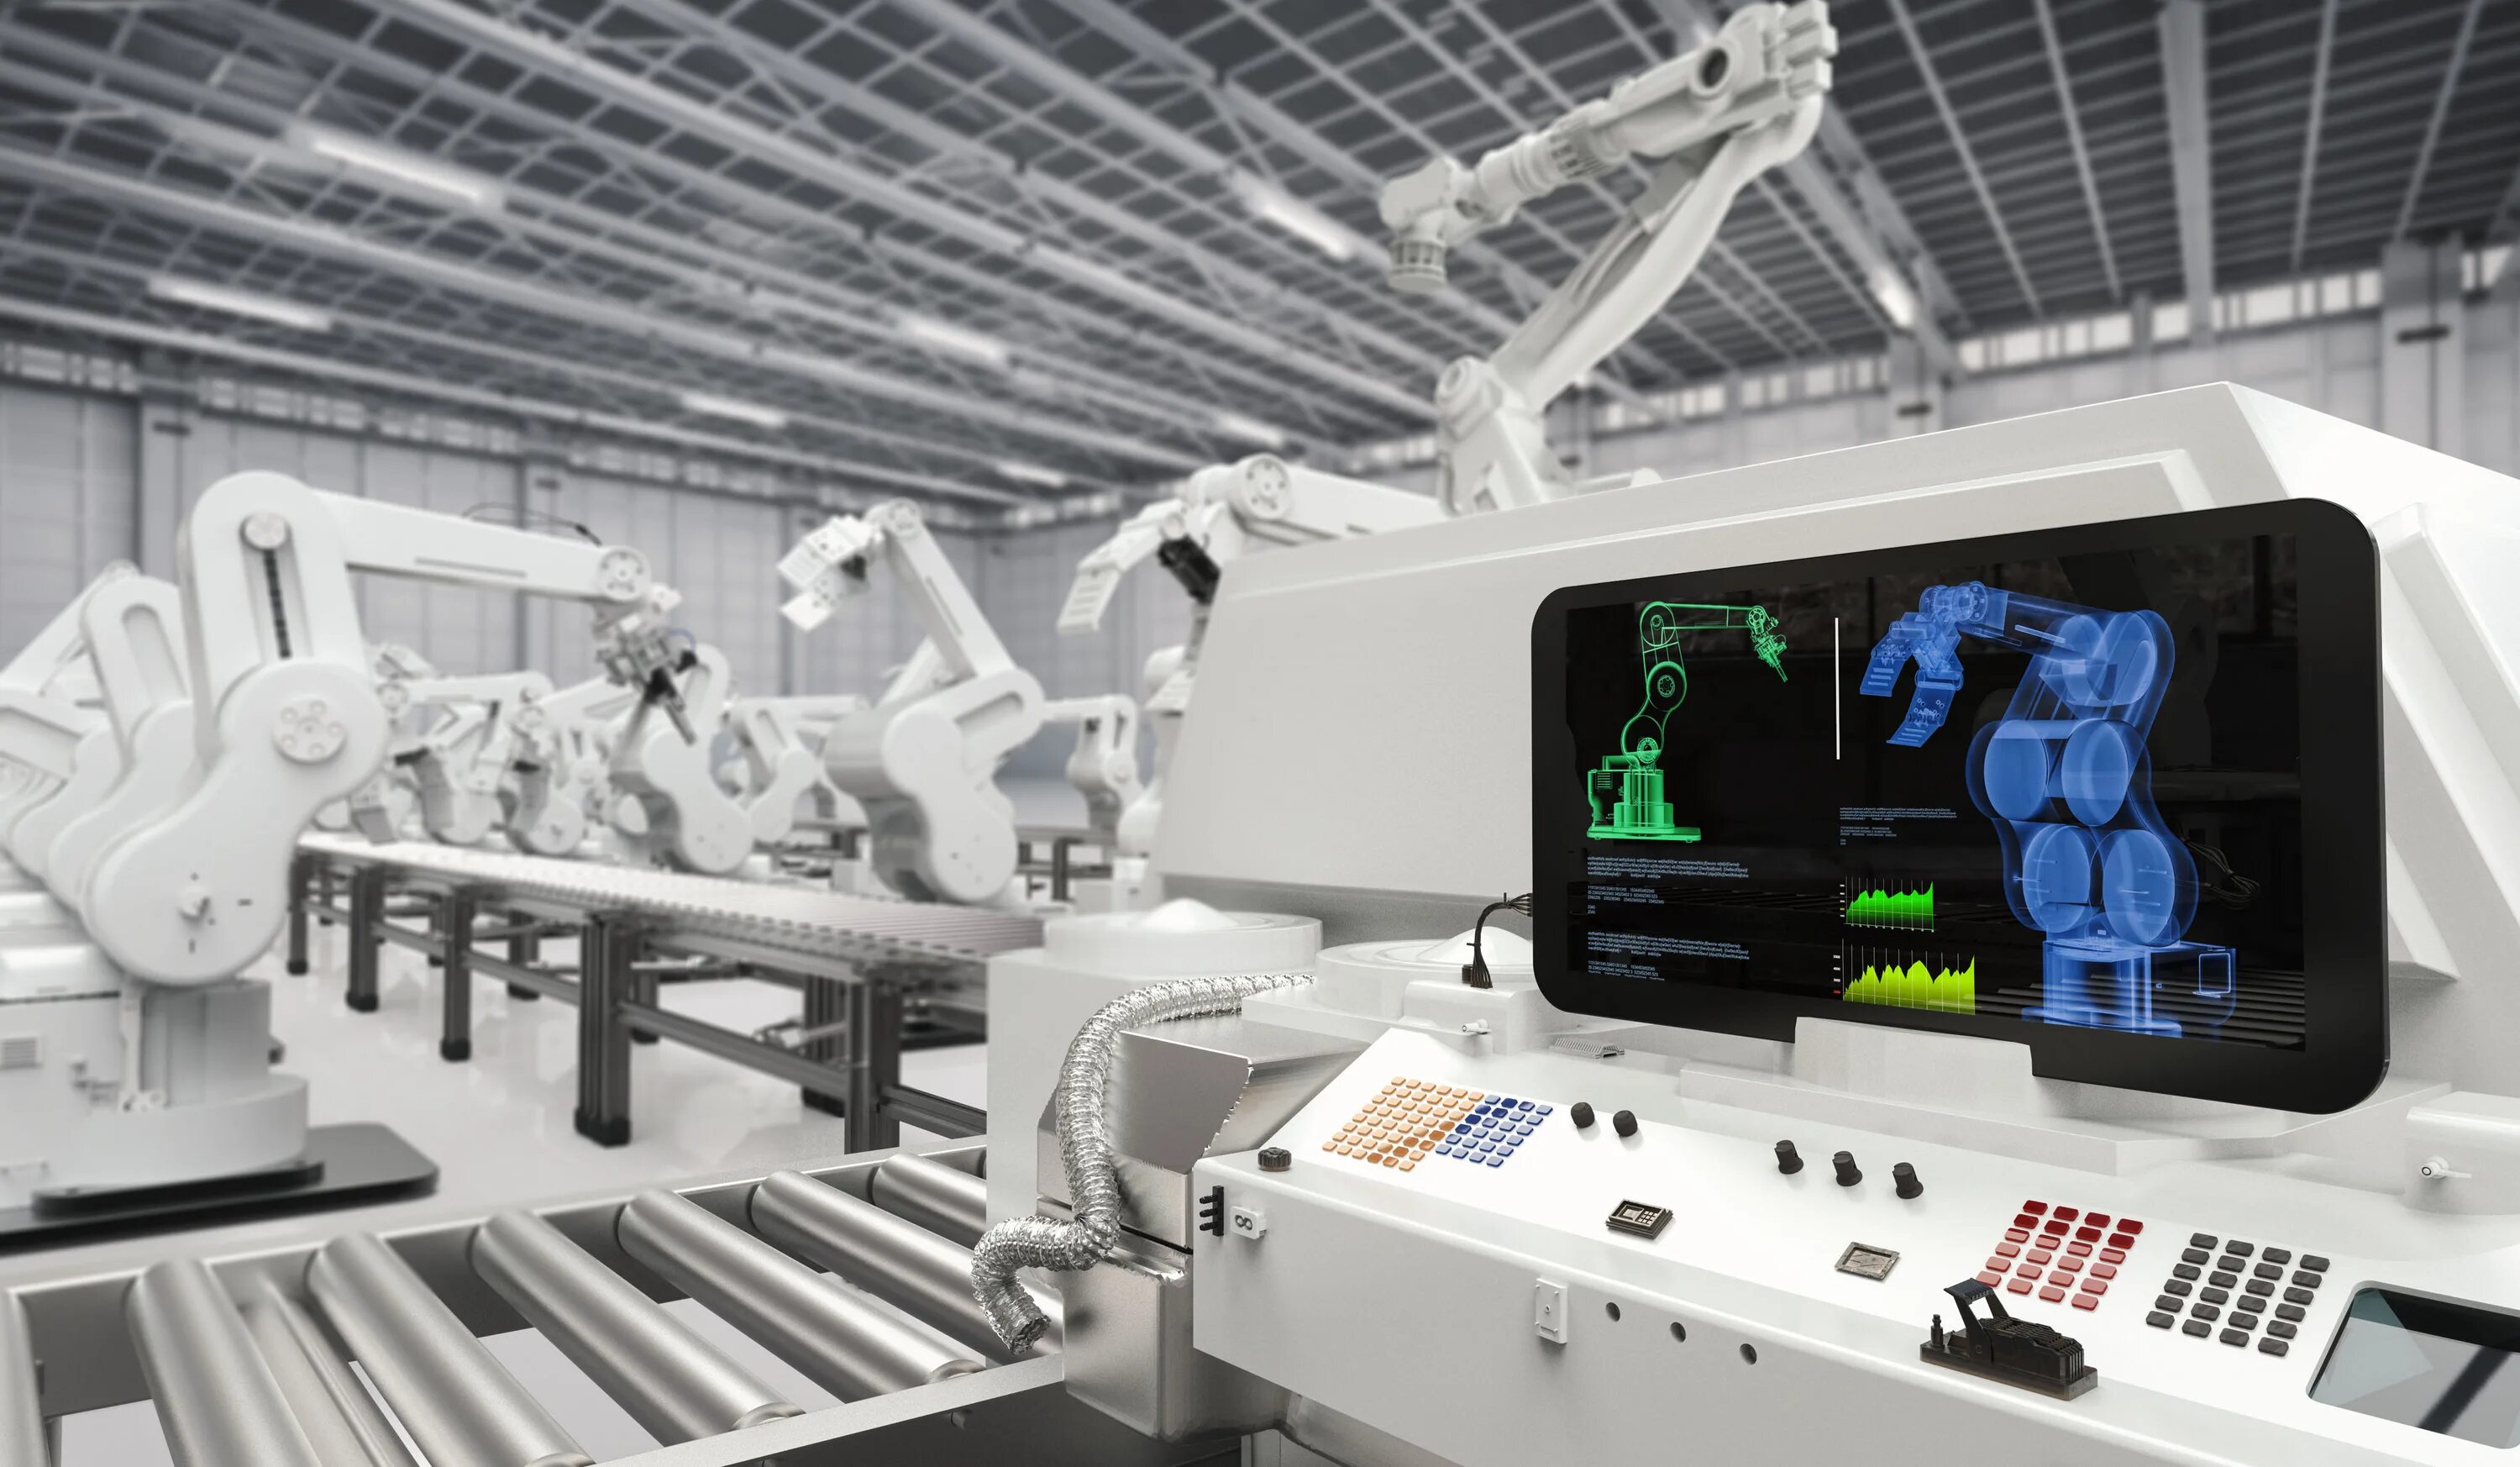 Автоматизация и роботизация производства. Завод будущего. Высокотехнологичное оборудование. Искусственный интеллект в промышленности. Автоматика на производстве